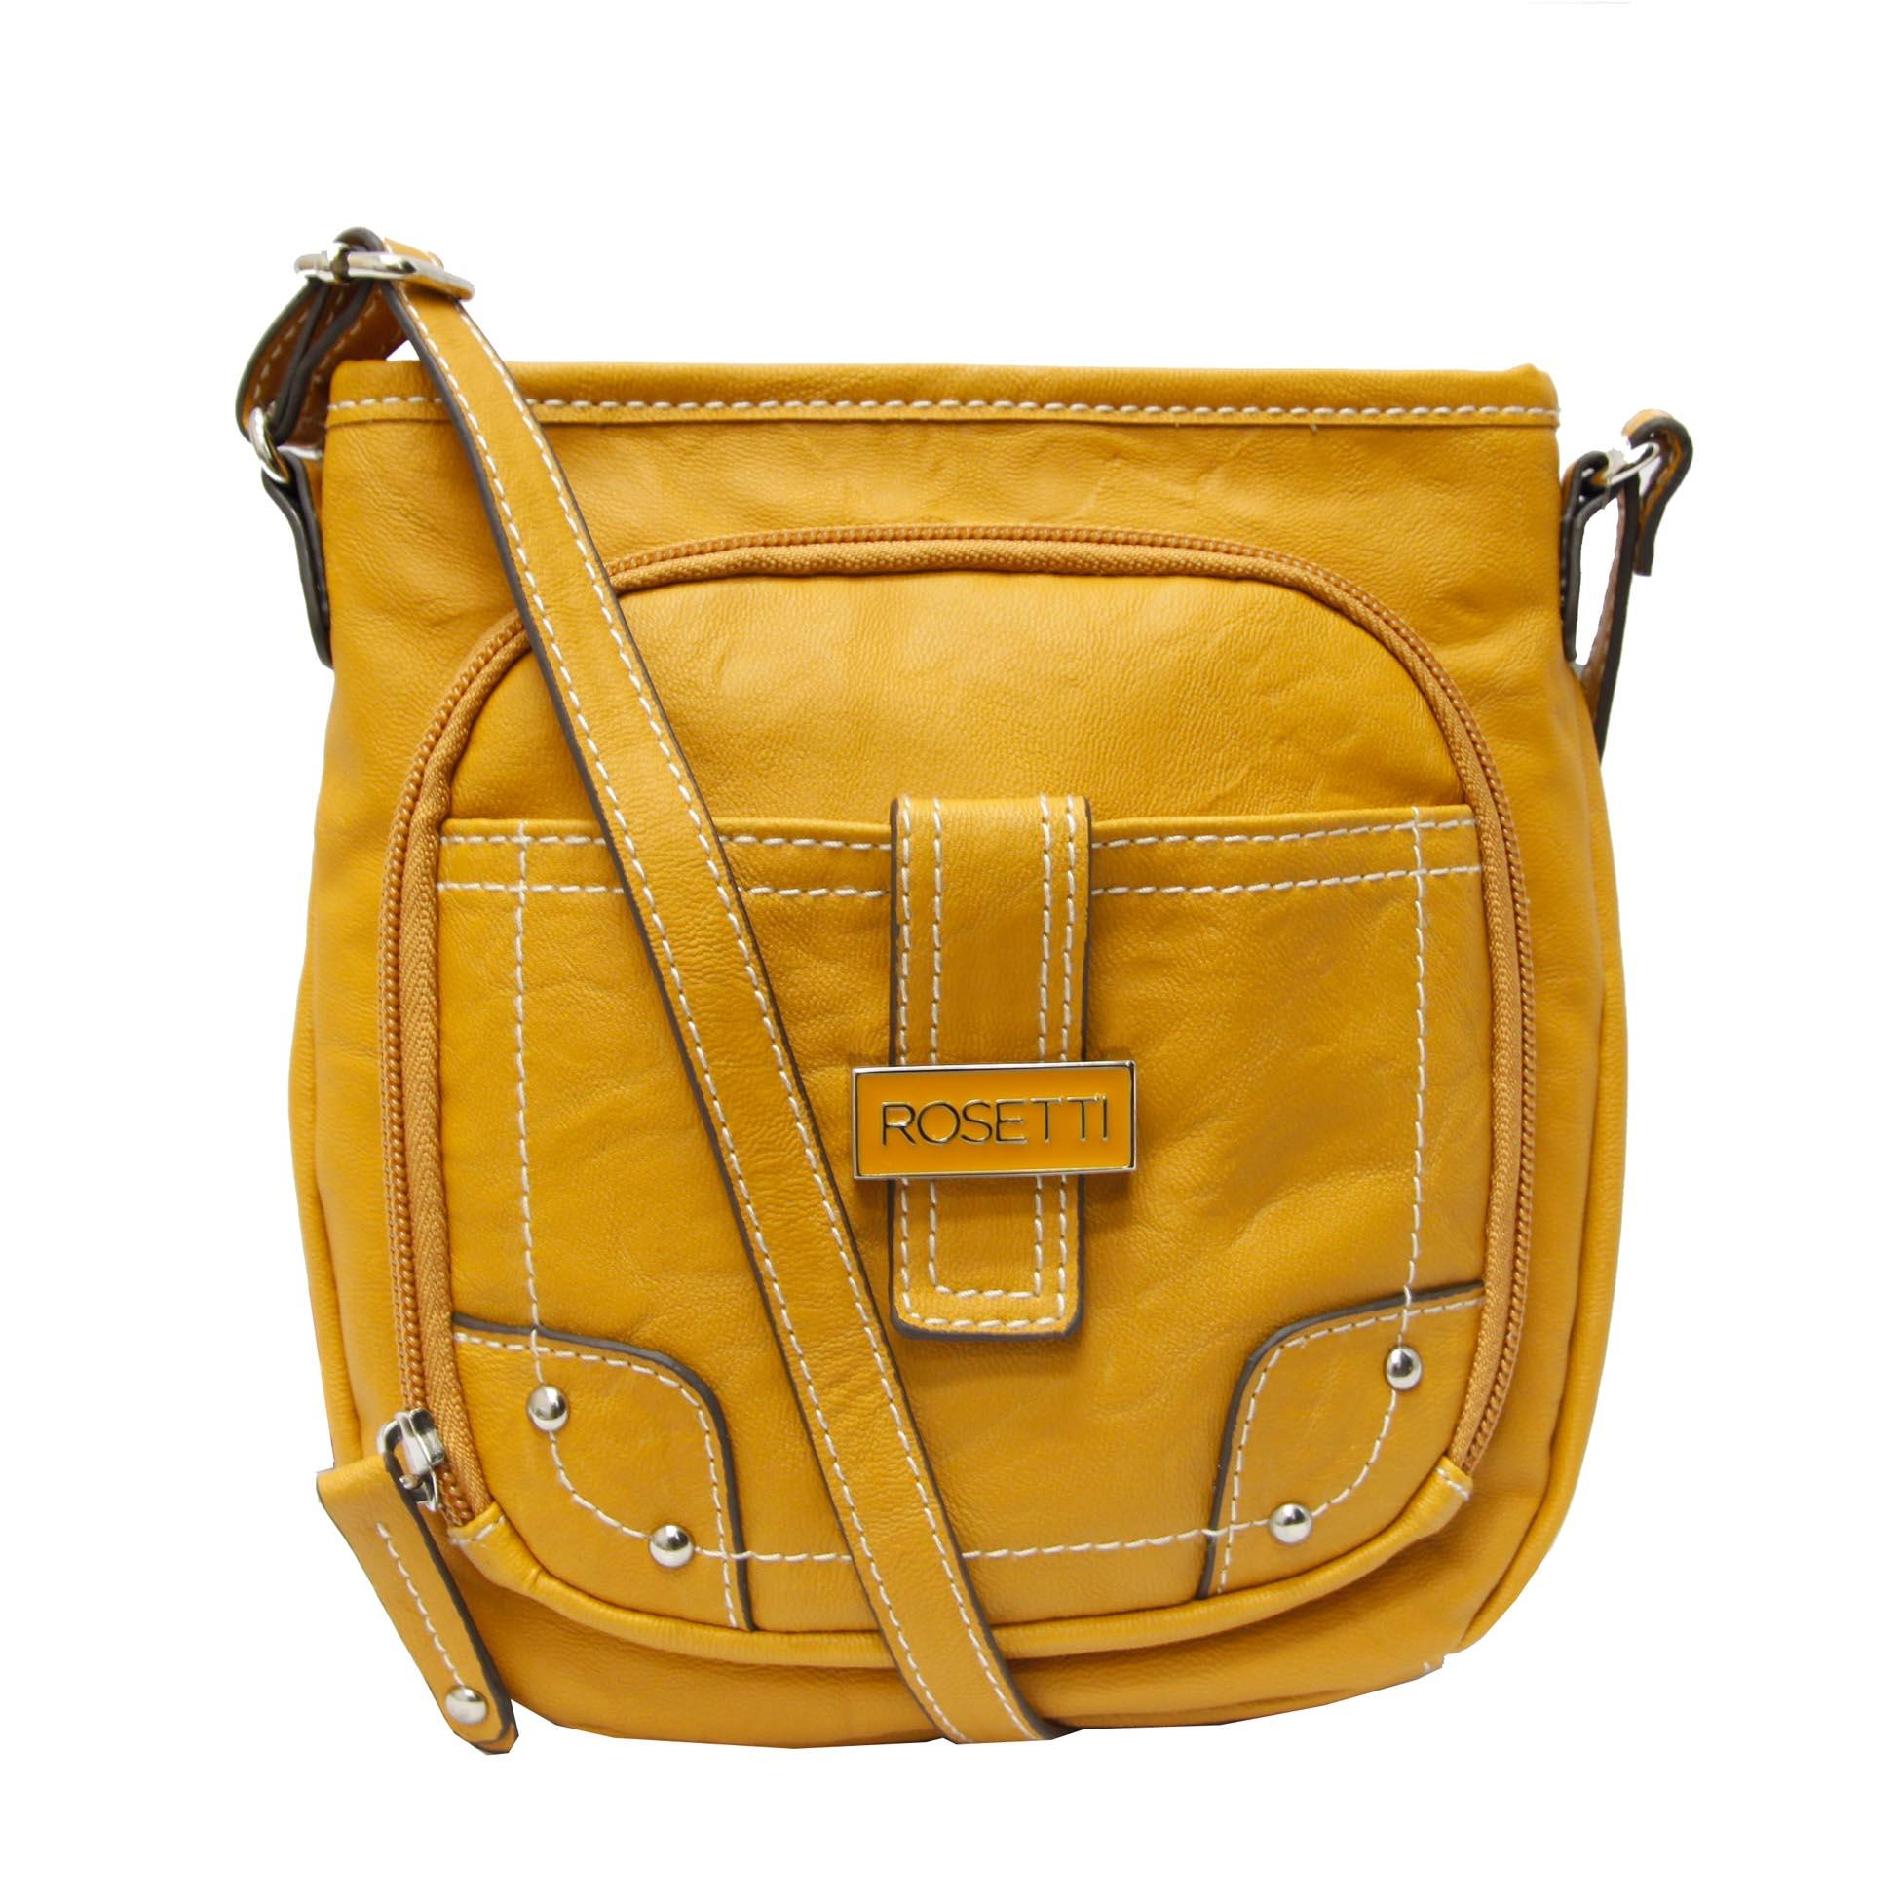 Rosetti Women's Cash & Carry Mini Handbag - Faux Leather